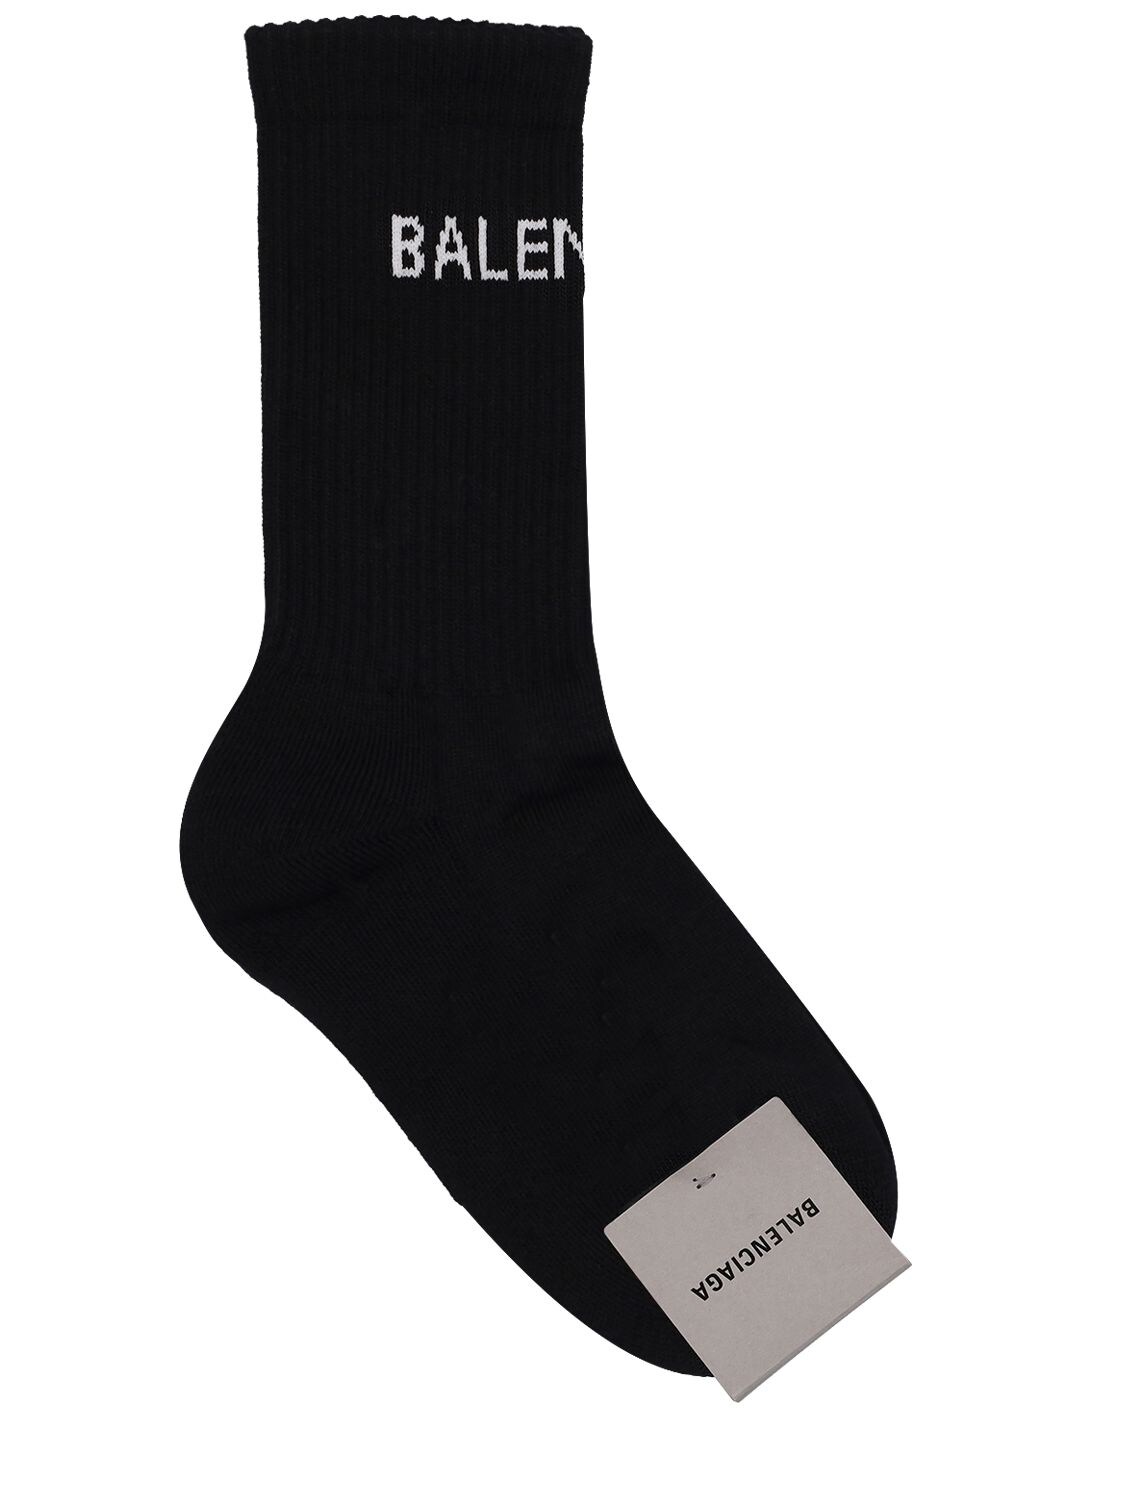 BALENCIAGA Logo Cotton Blend Tennis Socks